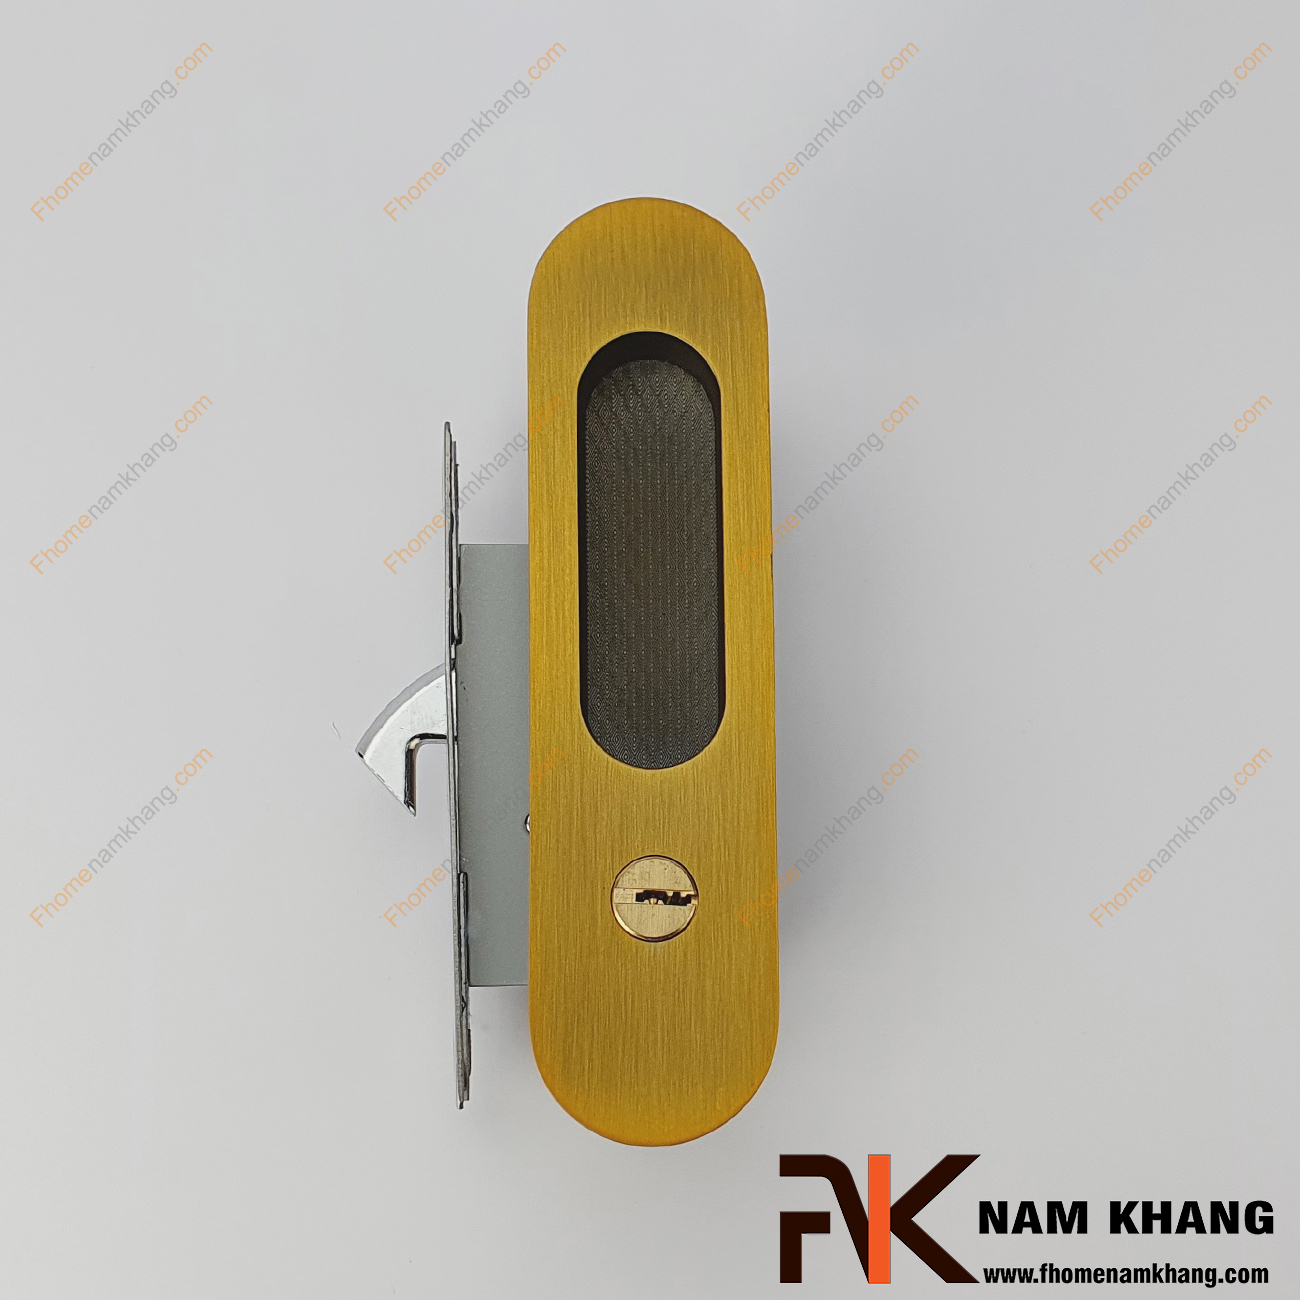 Khóa âm cửa lùa bằng inox màu đồng rêu NK568H-DR được sản xuất từ chất liệu cao cấp với kiểu dáng đơn giản phù hợp với nhiều không gian thiết kế nhà ở.